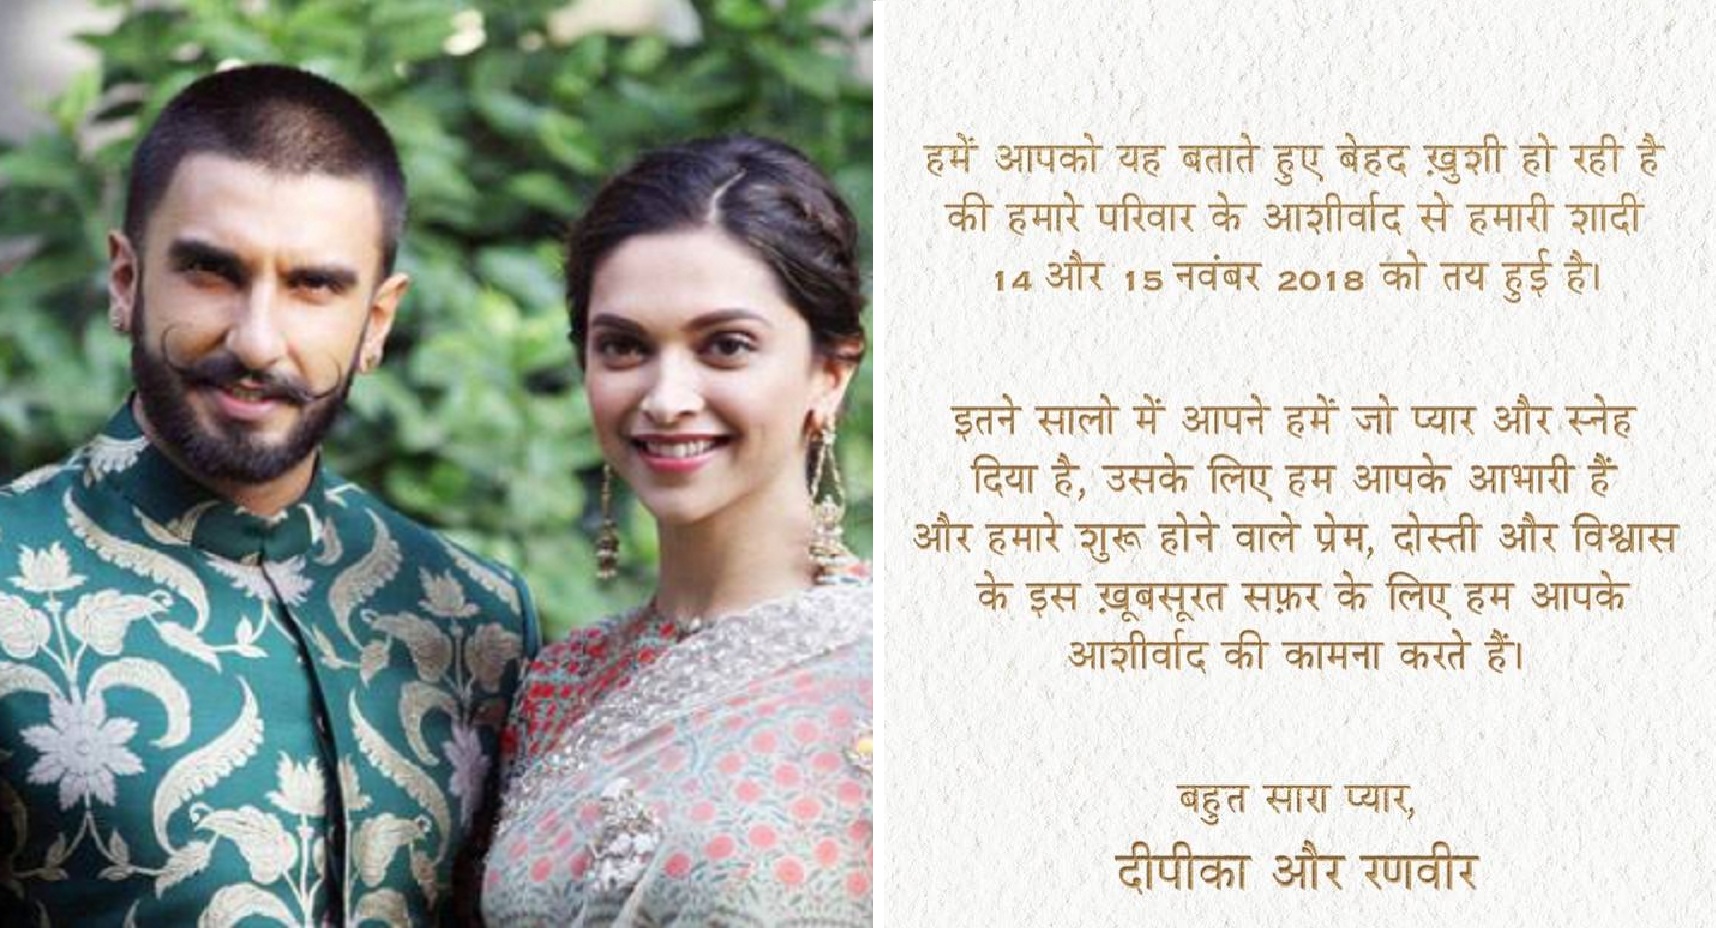 Confirmed: Deepika Padukone and Ranveer Singh Are Getting Married In November!